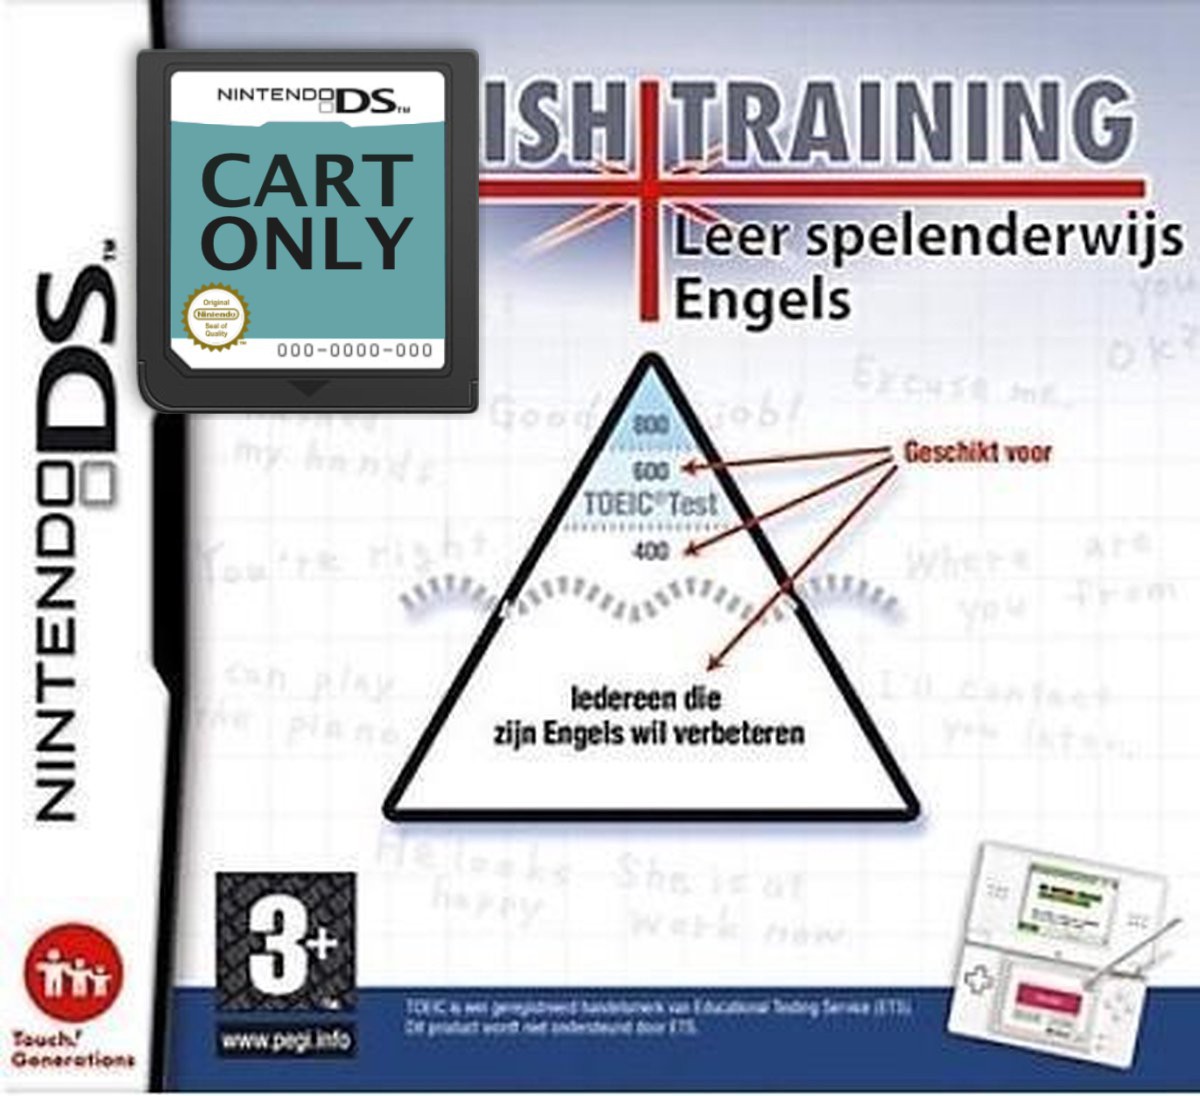 English Training Leer Spelenderwijs Engels - Cart Only - Nintendo DS Games